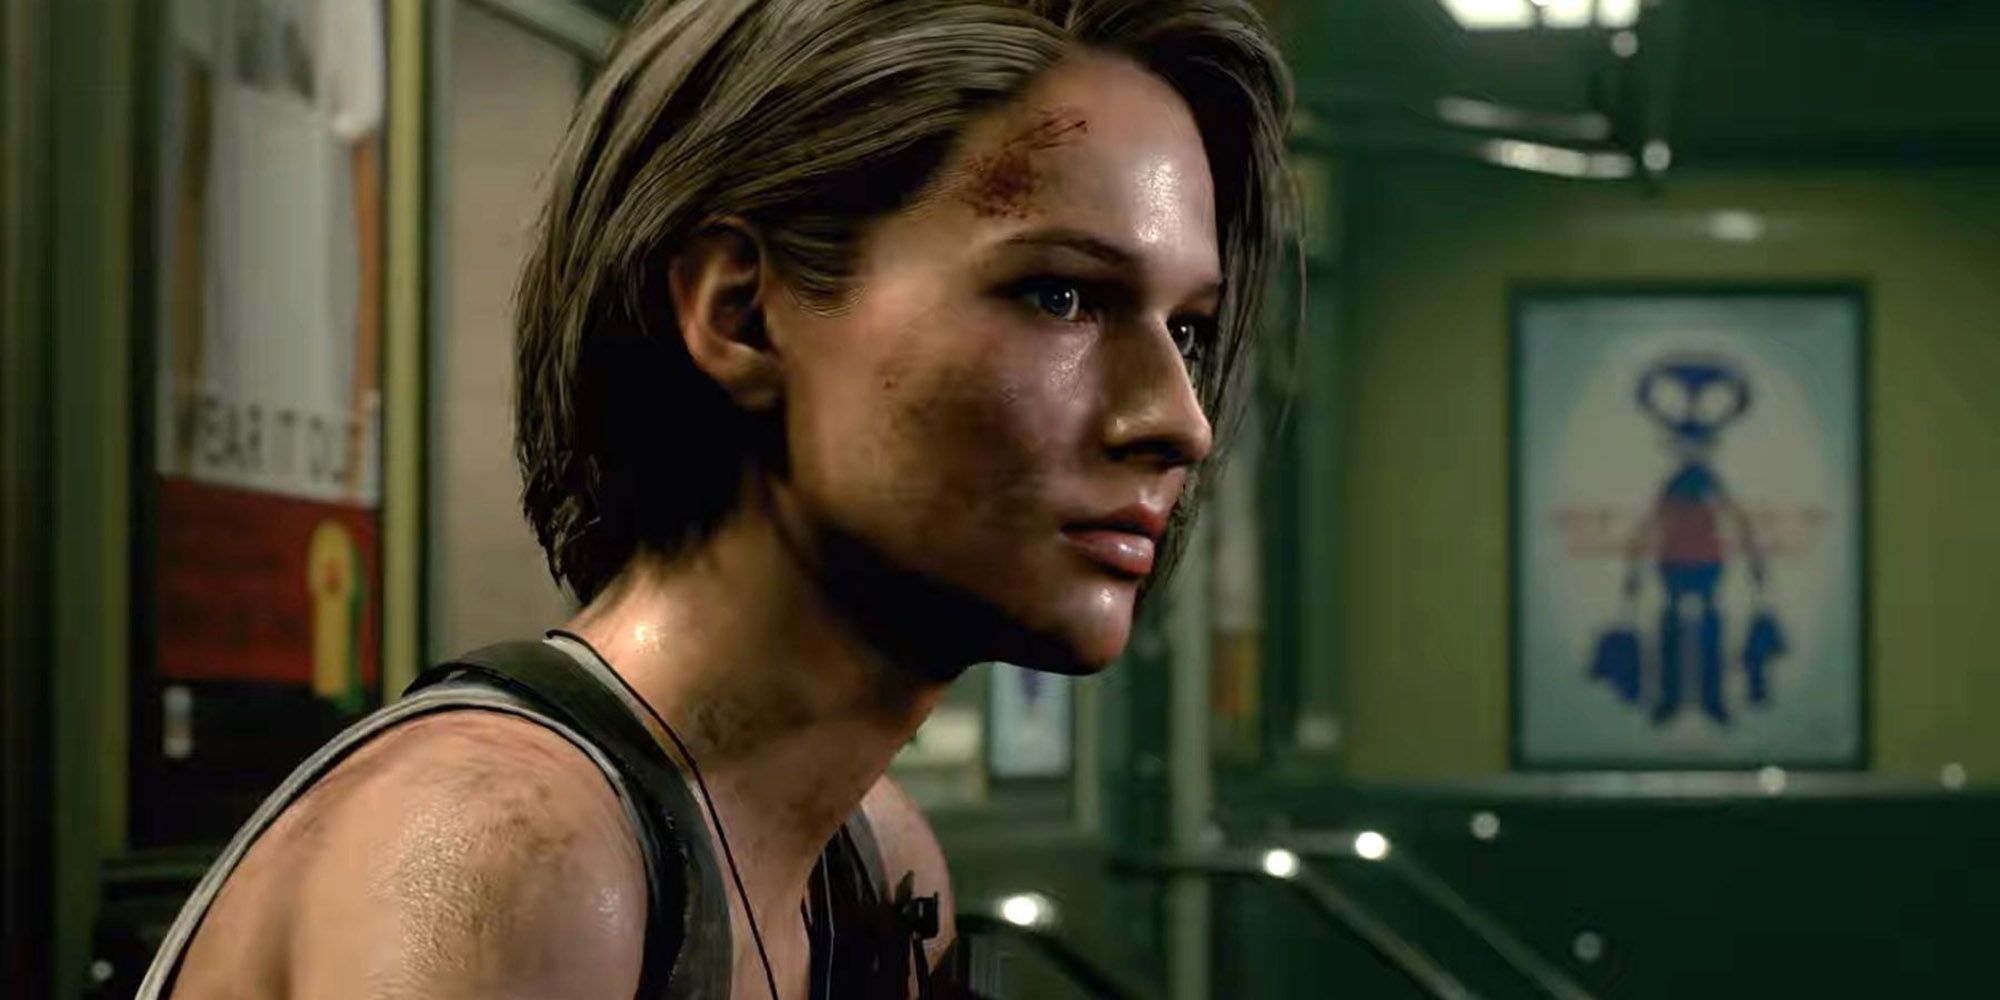 Jill from Resident Evil 3 Remake